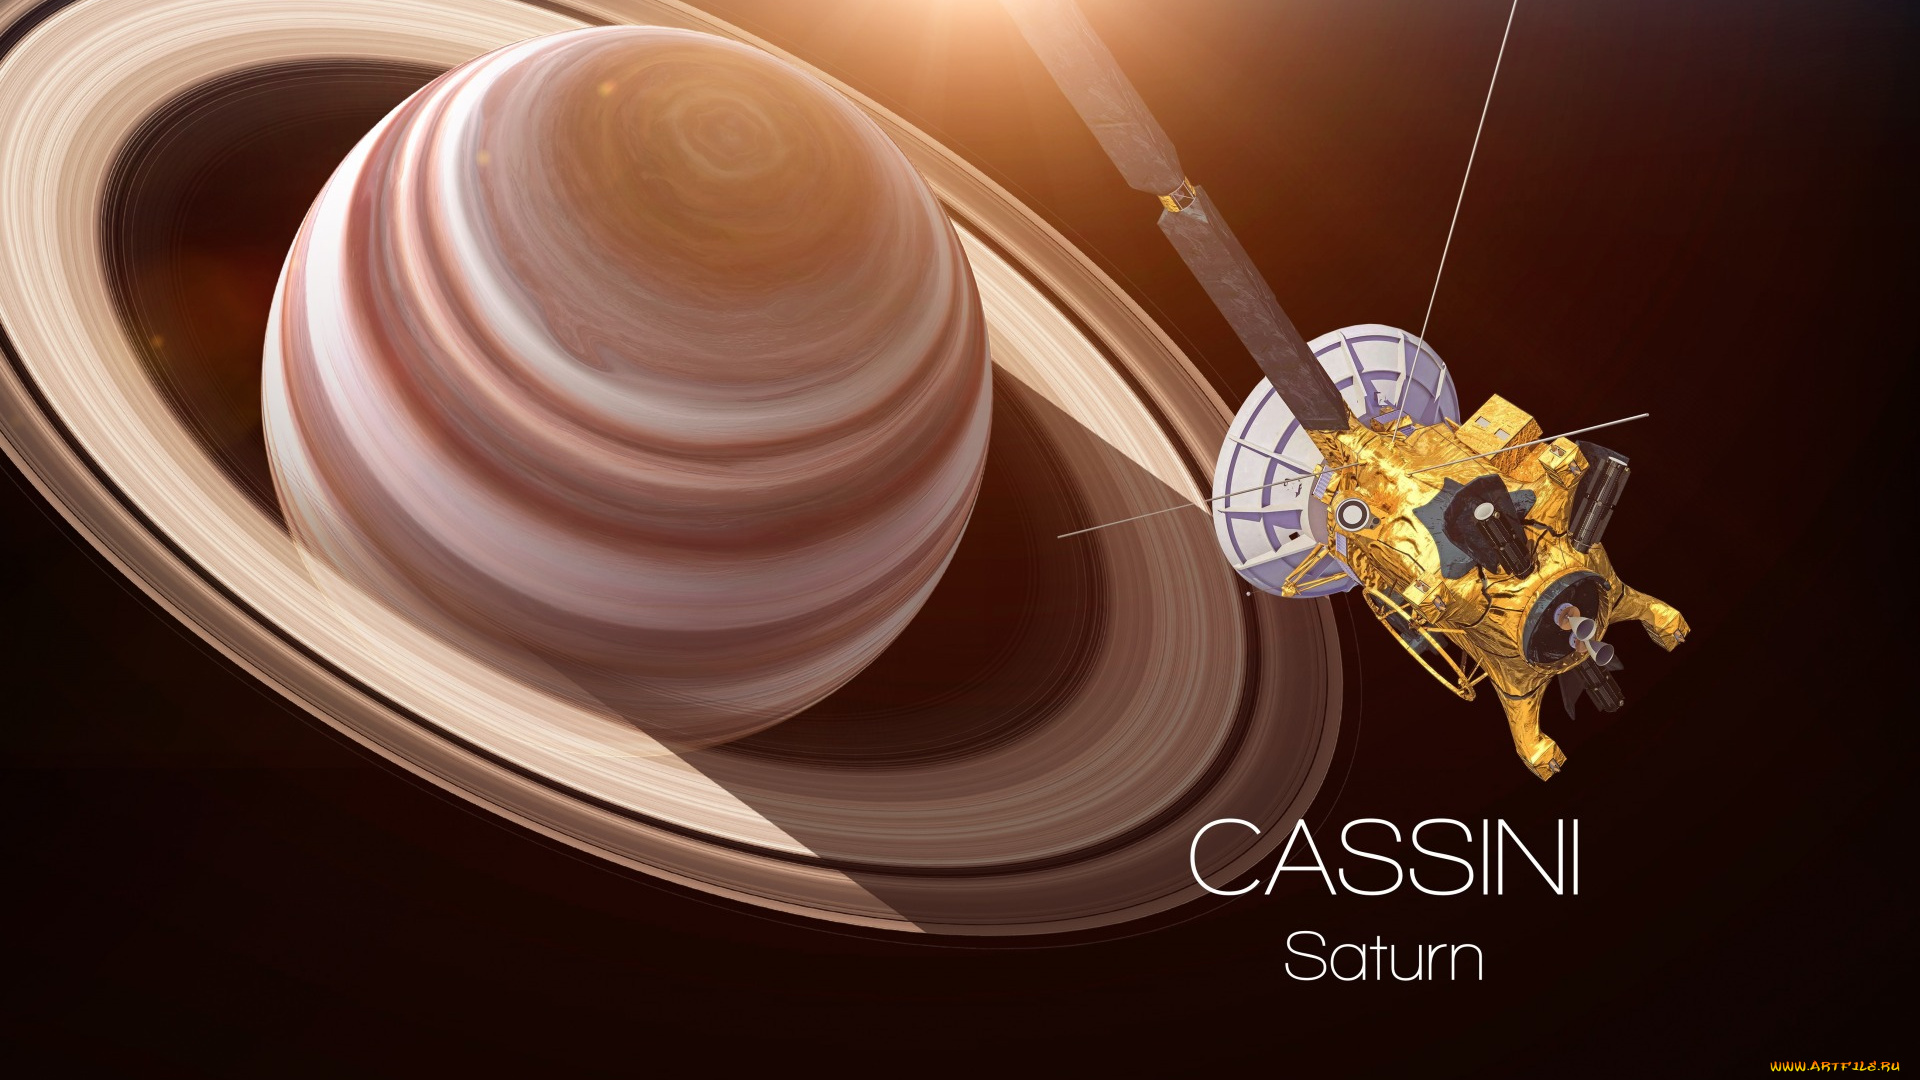 космос, сатурн, saturn, satellite, cassini